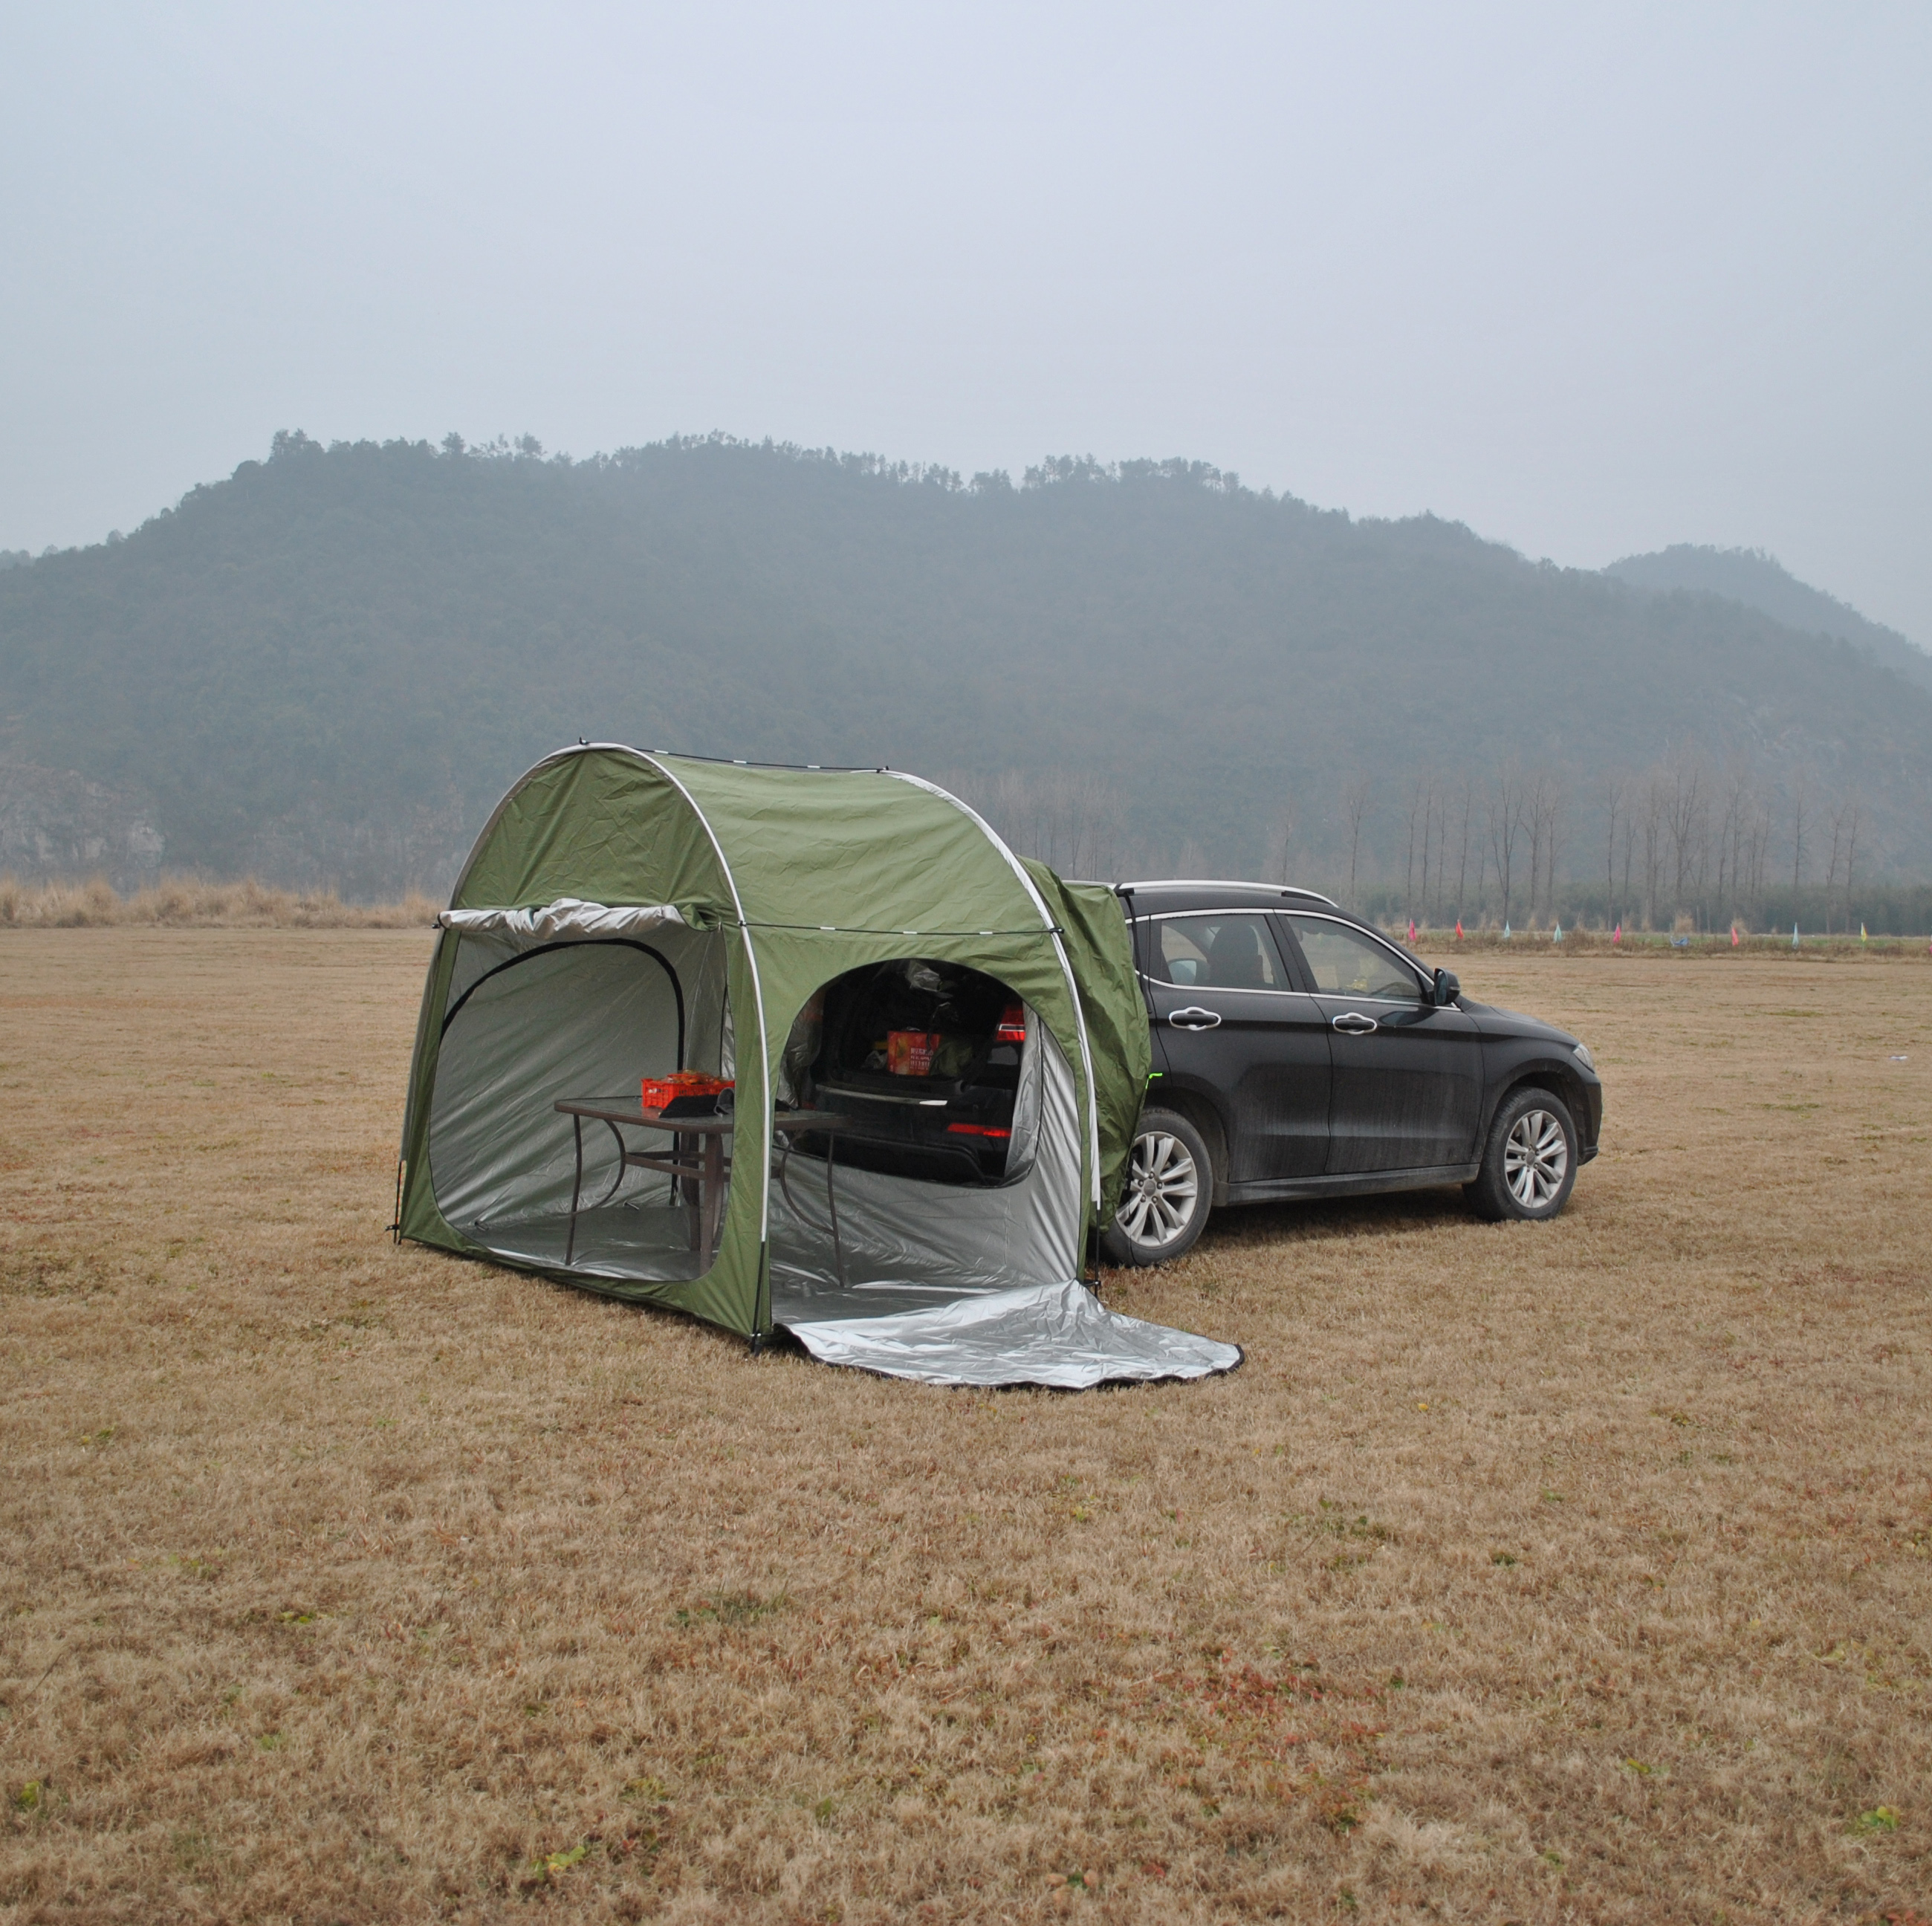 军绿SUV帐篷,汽车帐篷自行车帐篷两用,自行车帐篷可连接车尾帐篷